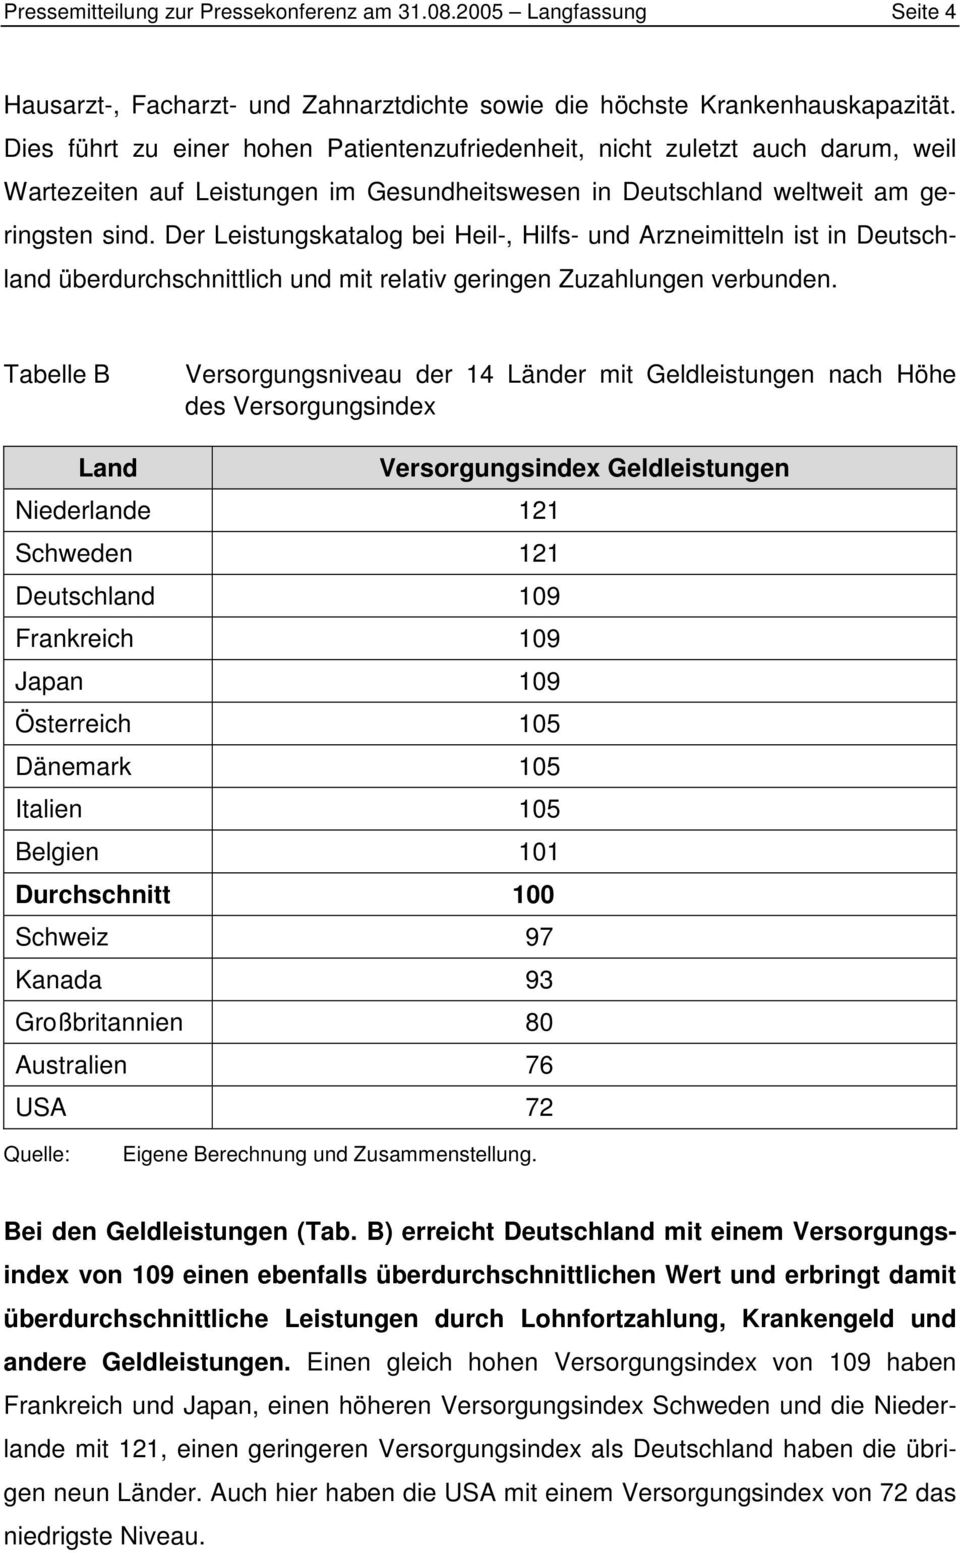 Der Leistungskatalog bei Heil-, Hilfs- und Arzneimitteln ist in Deutschland überdurchschnittlich und mit relativ geringen Zuzahlungen verbunden.